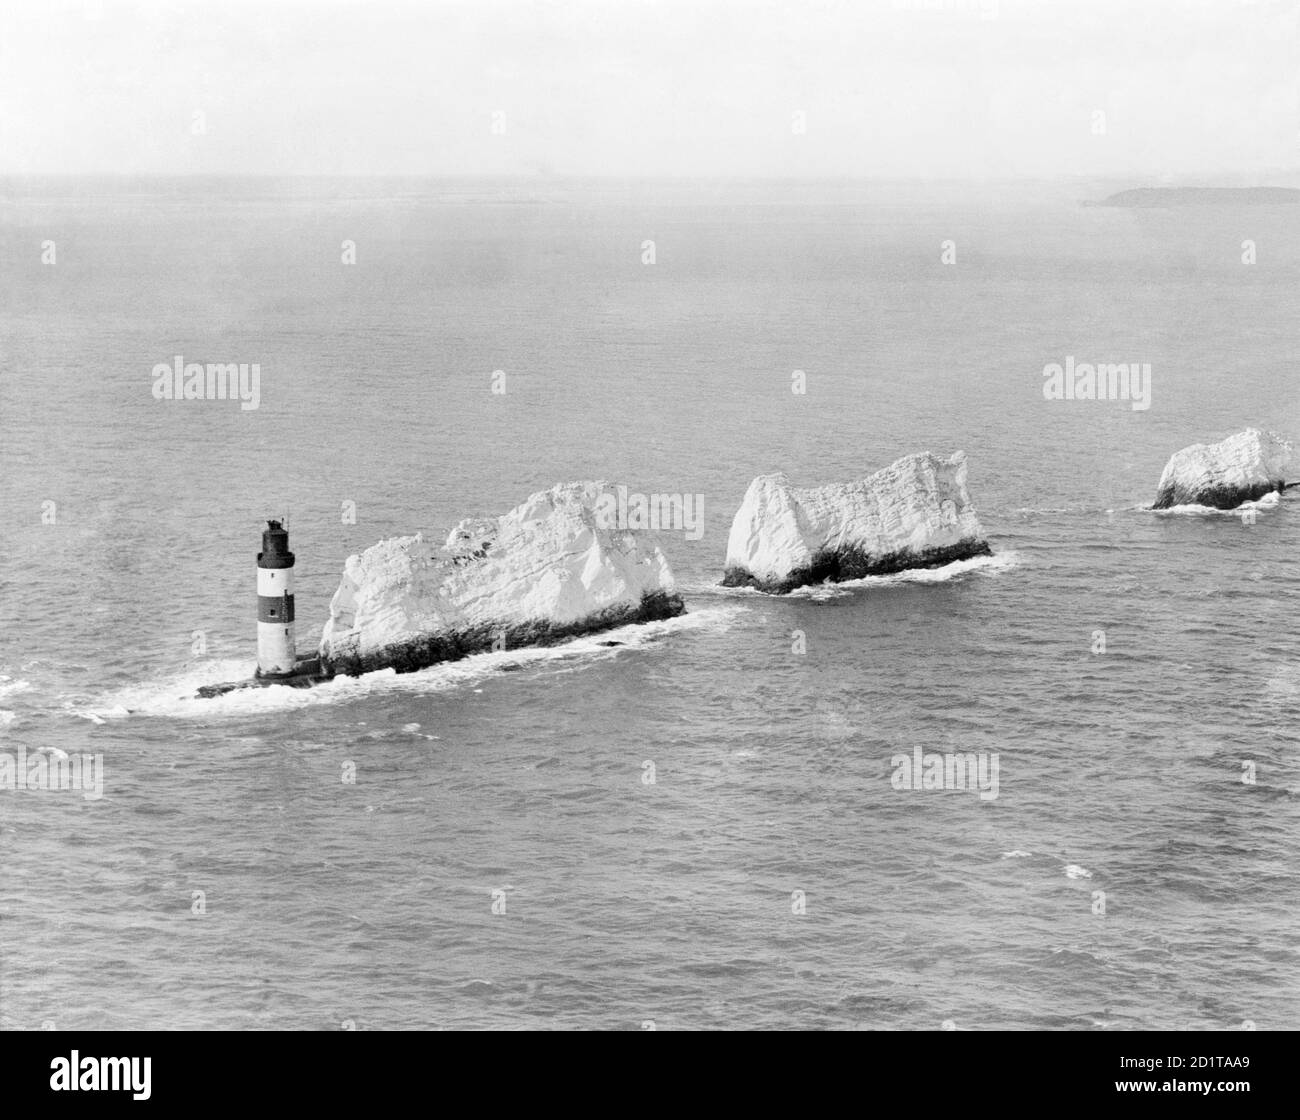 DIE NADELN, Isle of Wight. Frühe Luftaufnahme dieses berühmten Wahrzeichen von Kreidestapeln, die aus dem Meer emporragen und im Needles Lighthouse (1859) kulminieren. Fotografiert im April 1920. Aerofilms Collection (siehe Links). Stockfoto